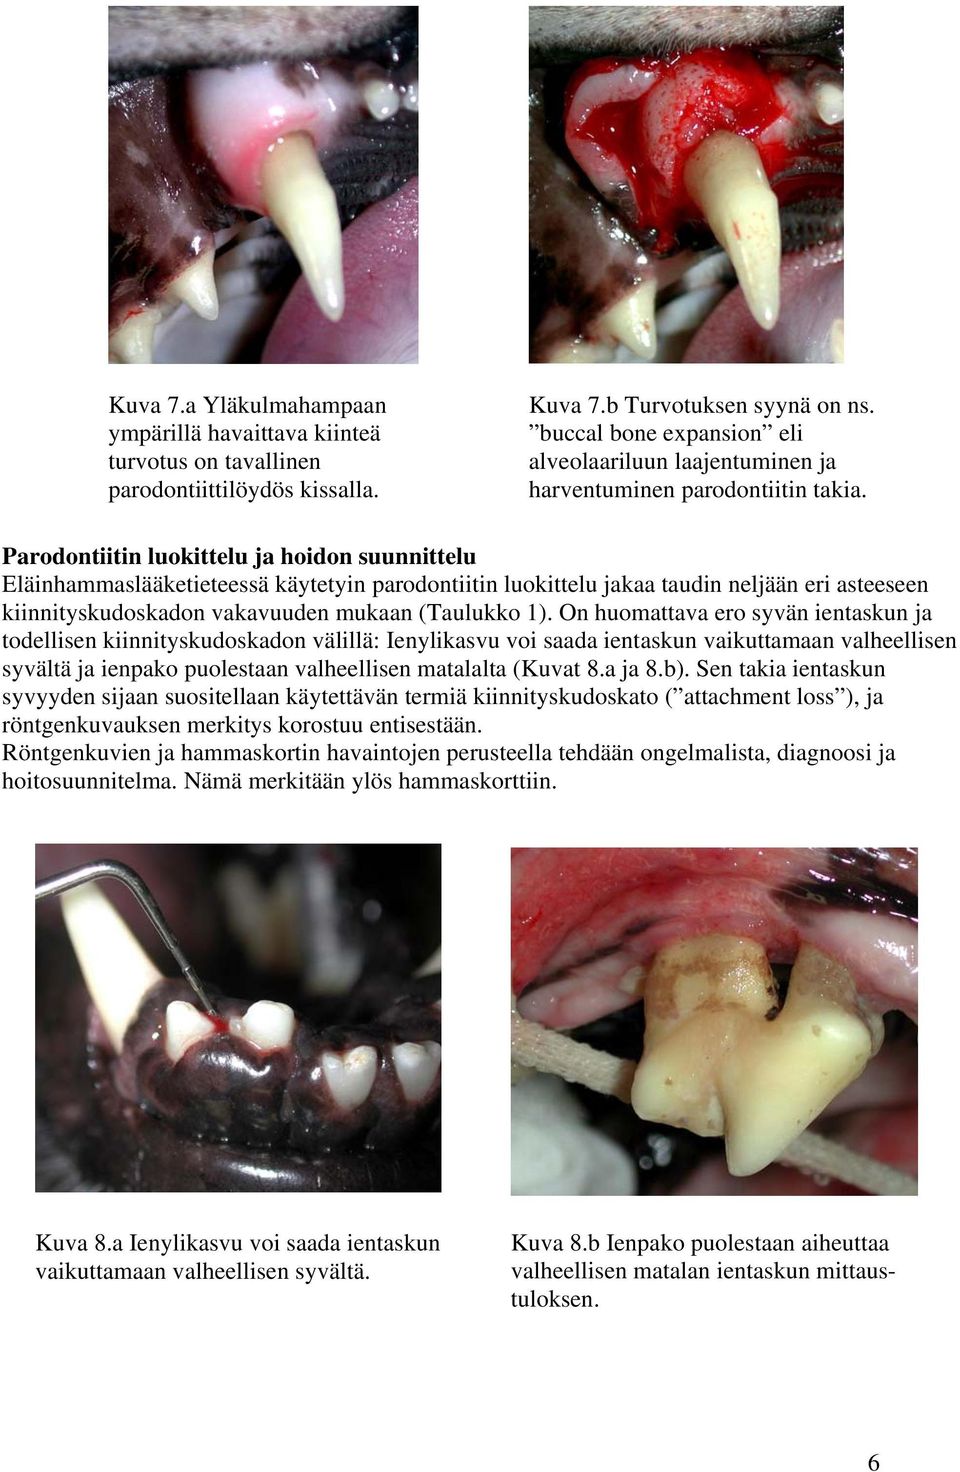 Parodontiitin luokittelu ja hoidon suunnittelu Eläinhammaslääketieteessä käytetyin parodontiitin luokittelu jakaa taudin neljään eri asteeseen kiinnityskudoskadon vakavuuden mukaan (Taulukko 1).